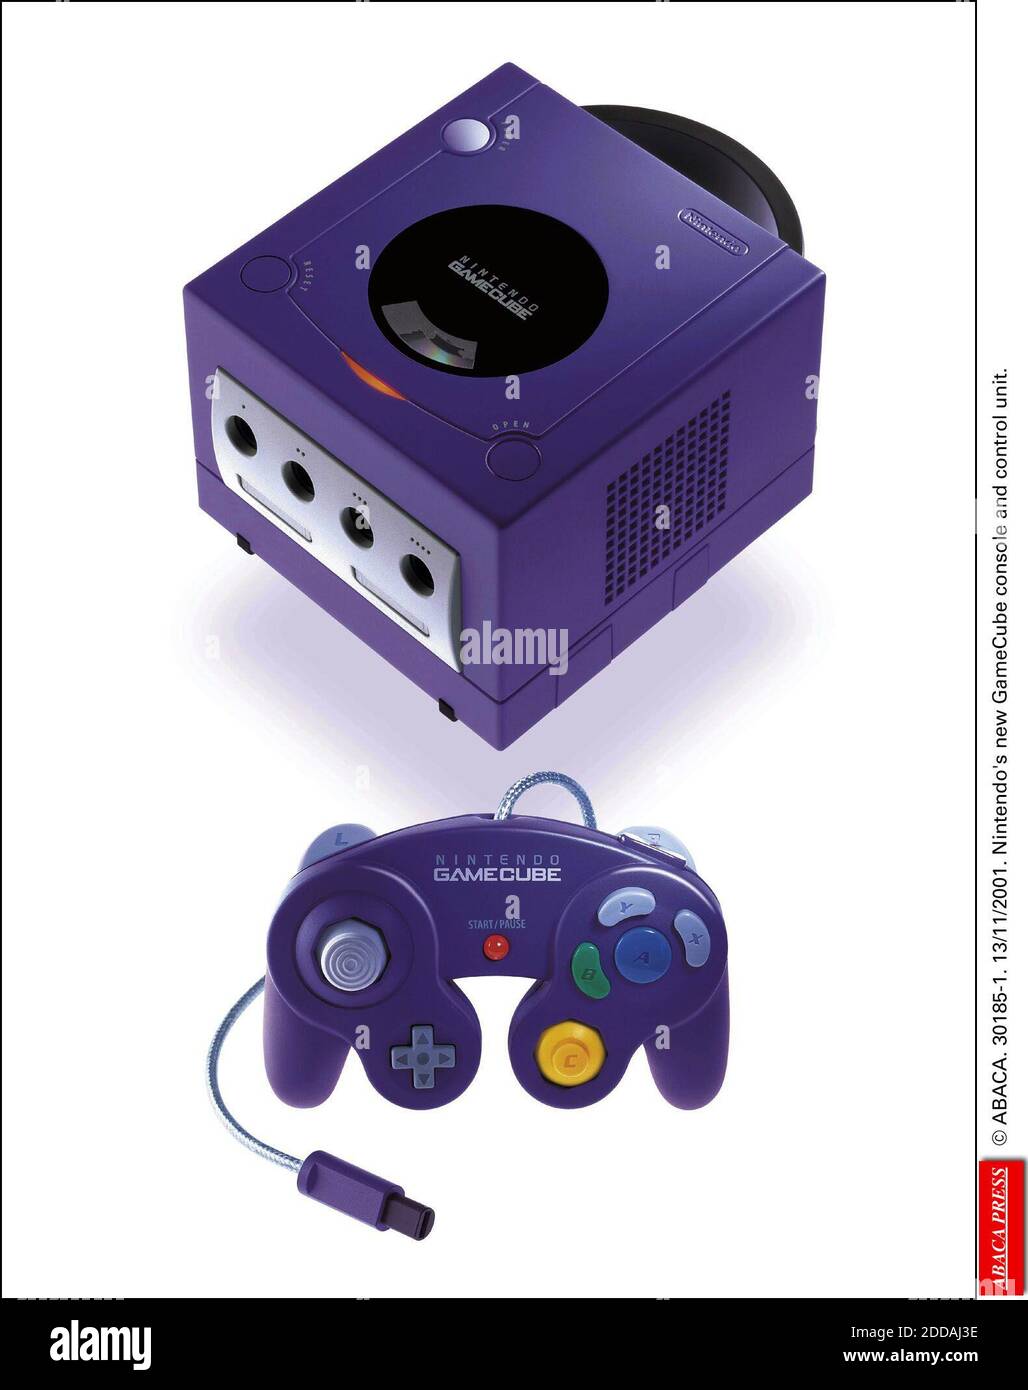 NO FILM, NO VIDEO, NO TV, NO DOCUMENTARY - © ABACA. 30185-1. 13/11/2001. Nintendo's new GameCube console and control unit. Stock Photo